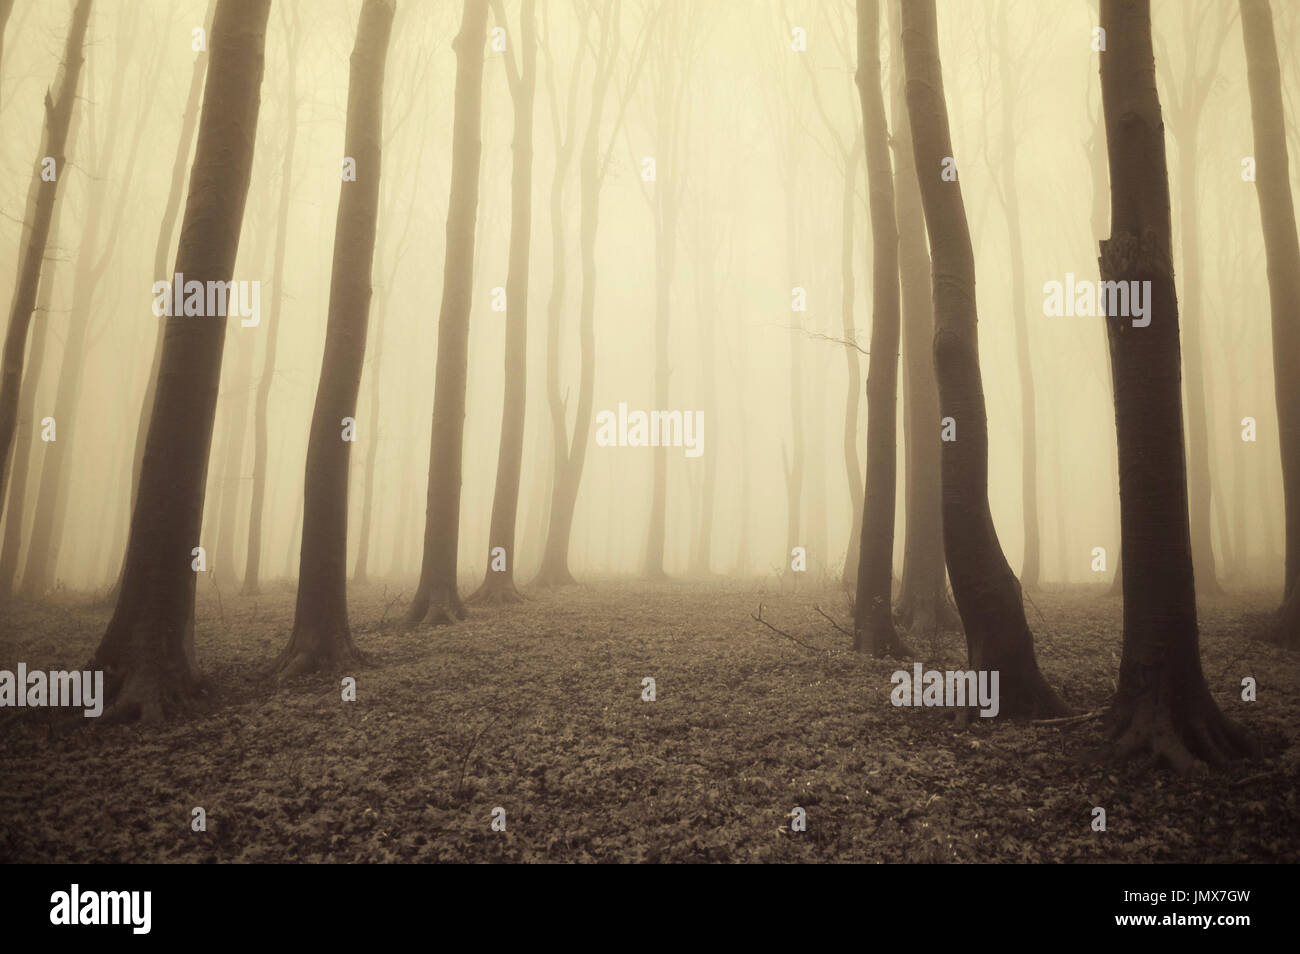 Geheimnisvolle Wald Landschaft mit Bäumen im Nebel Stockfoto